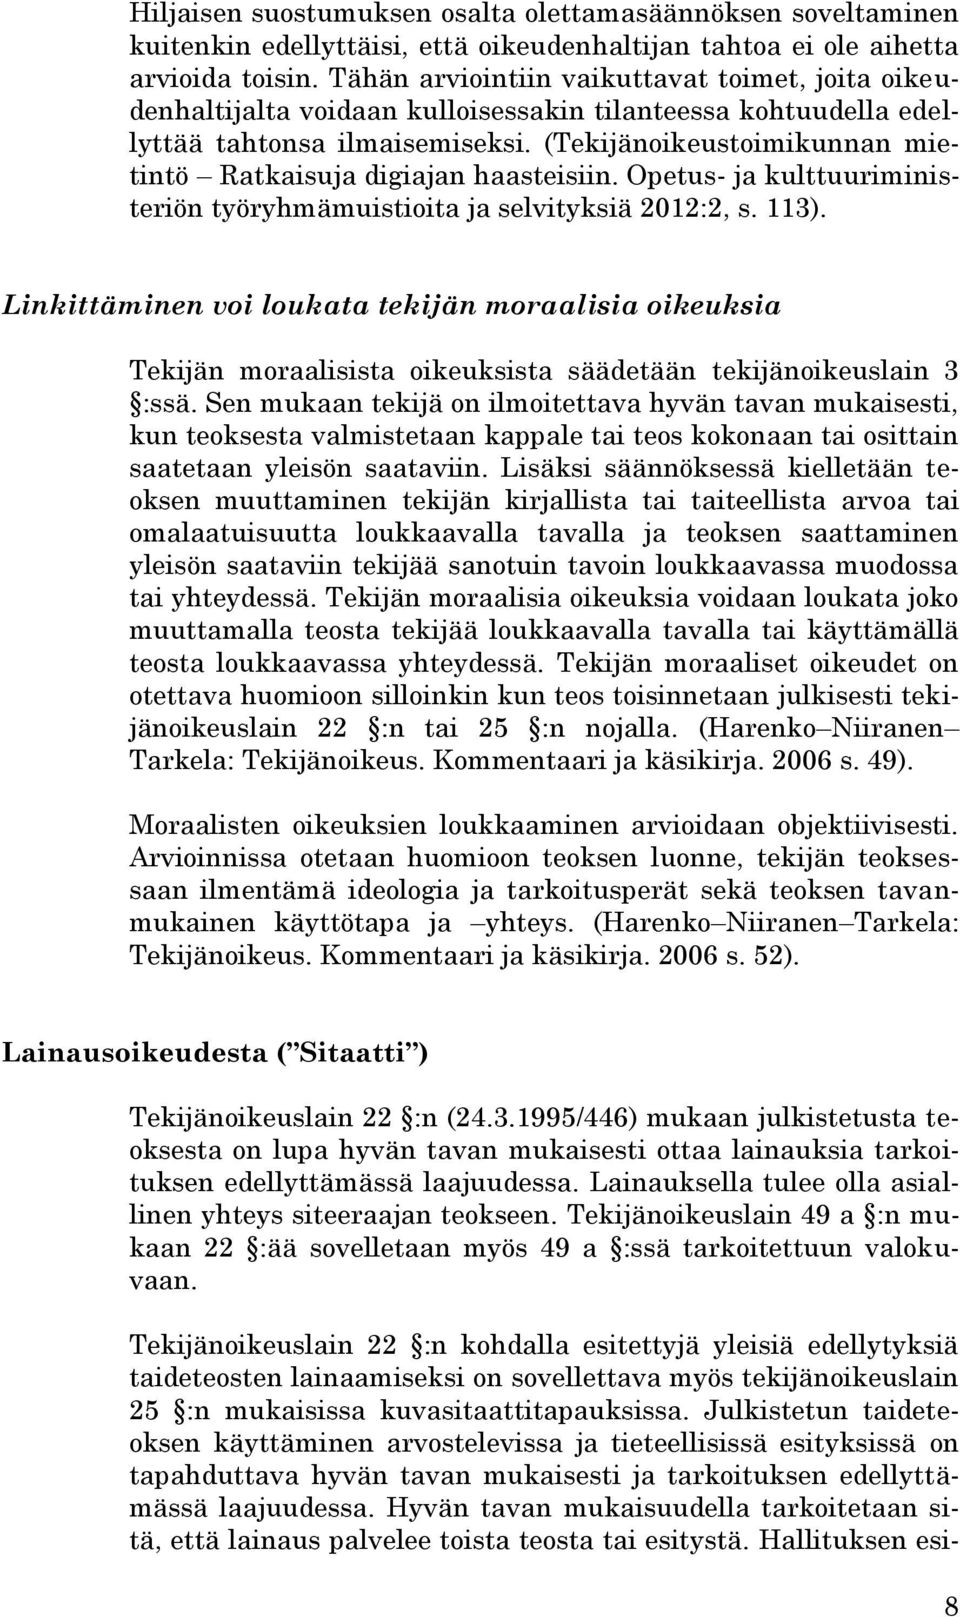 (Tekijänoikeustoimikunnan mietintö Ratkaisuja digiajan haasteisiin. Opetus- ja kulttuuriministeriön työryhmämuistioita ja selvityksiä 2012:2, s. 113).